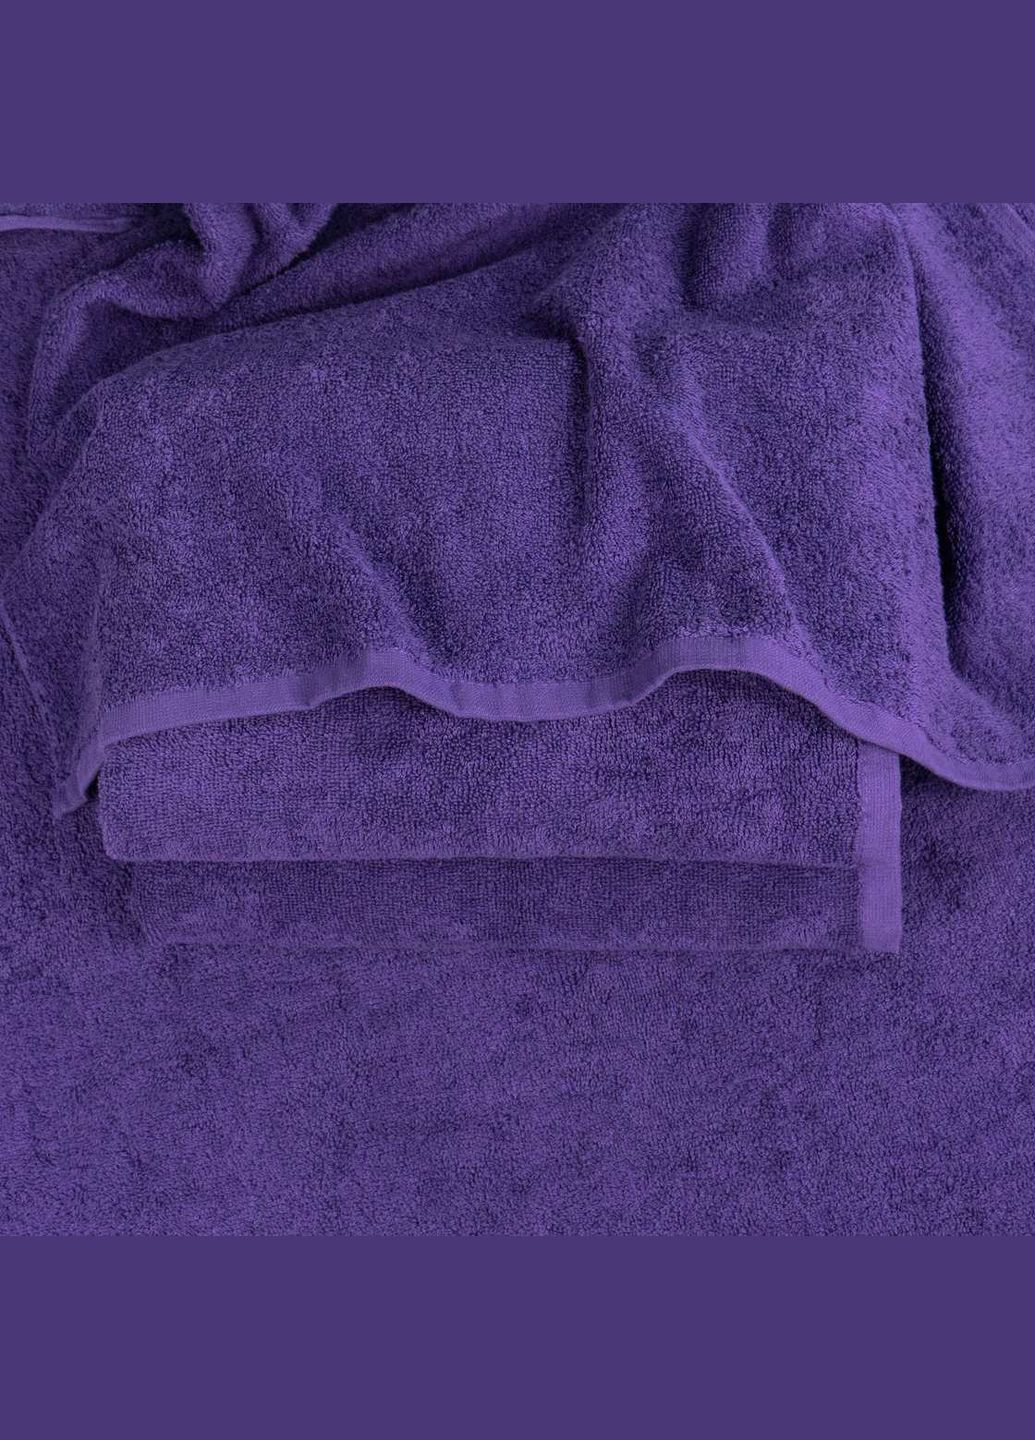 GM Textile набір махрових рушників 2шт 50х90см, 70х140см 400г/м2 (фіолетовий) фіолетовий виробництво -